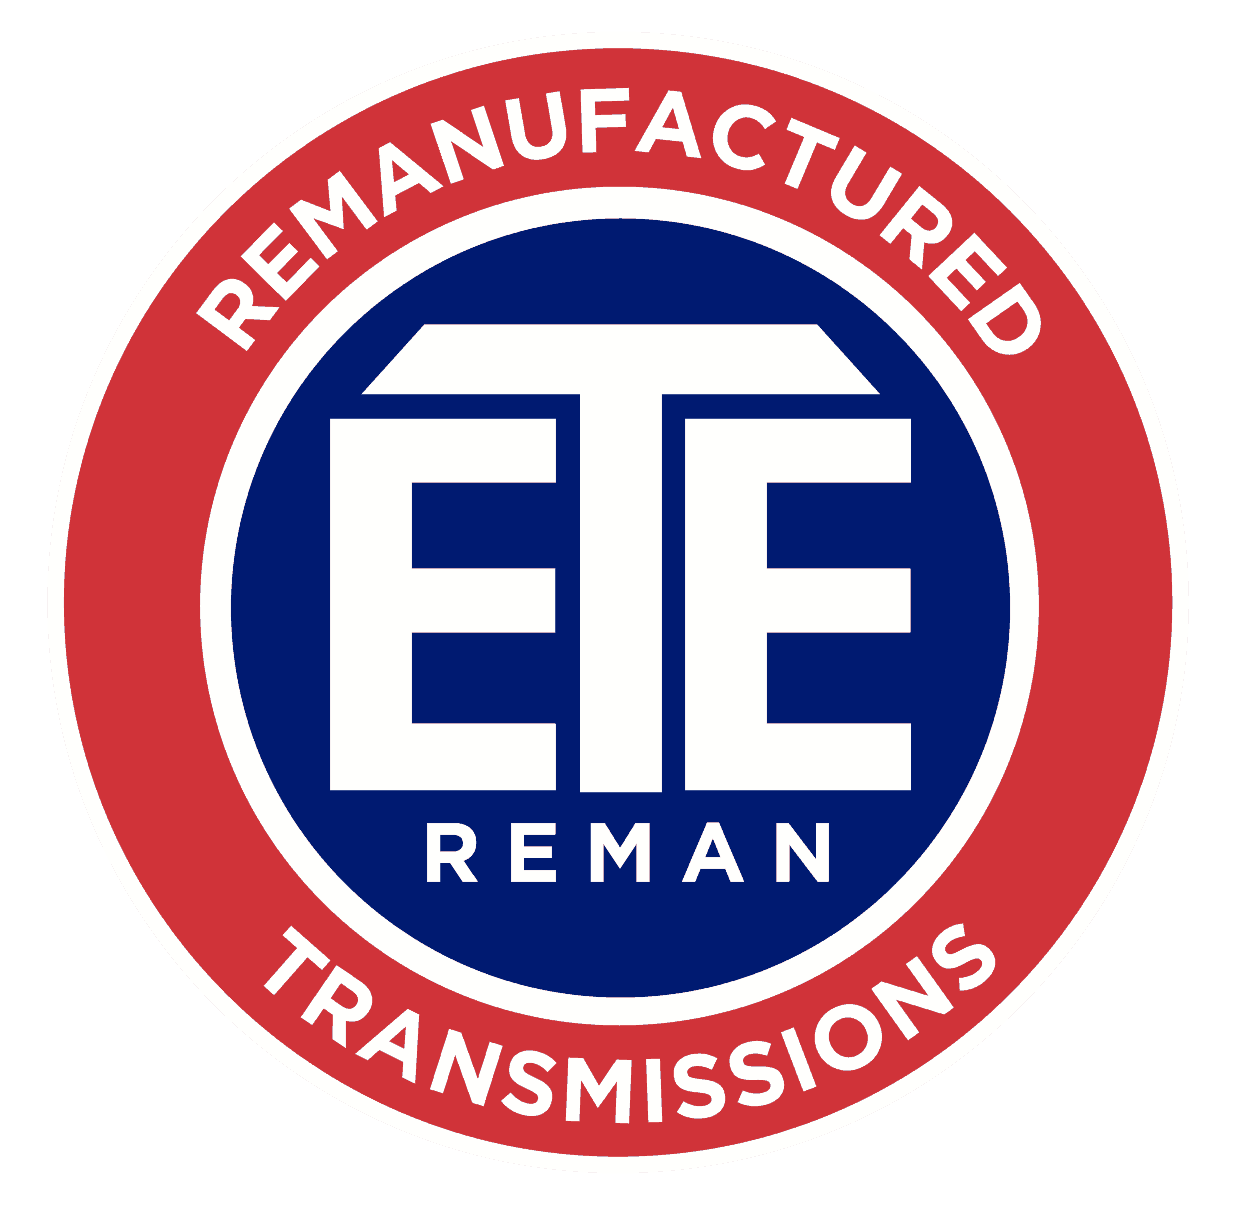 ETE Reman